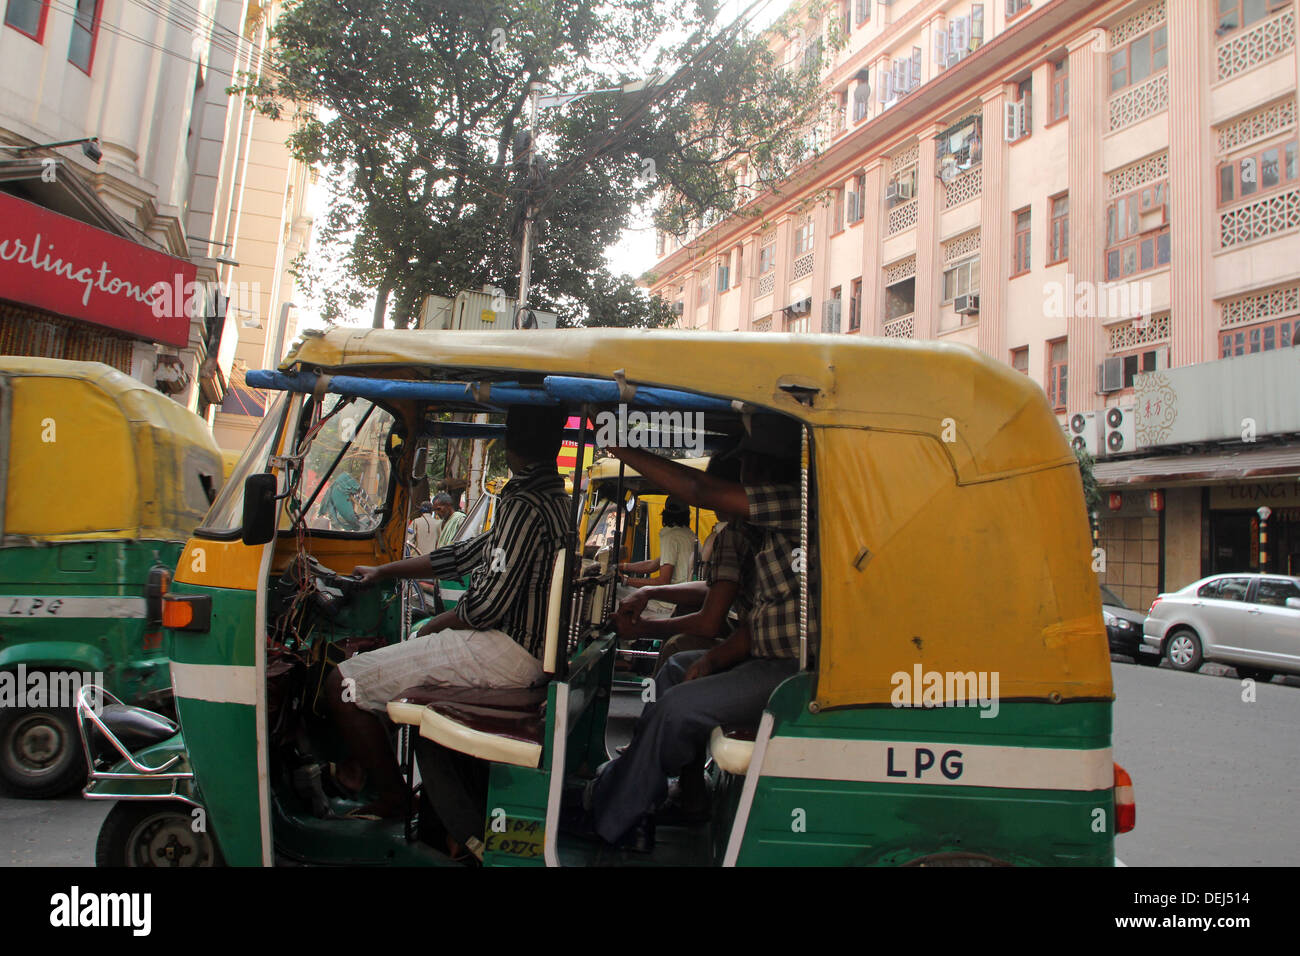 Auto rickshaw taxis on Nov 24, 2012, Mirza Ghalib Street, Kolkata, India. Stock Photo